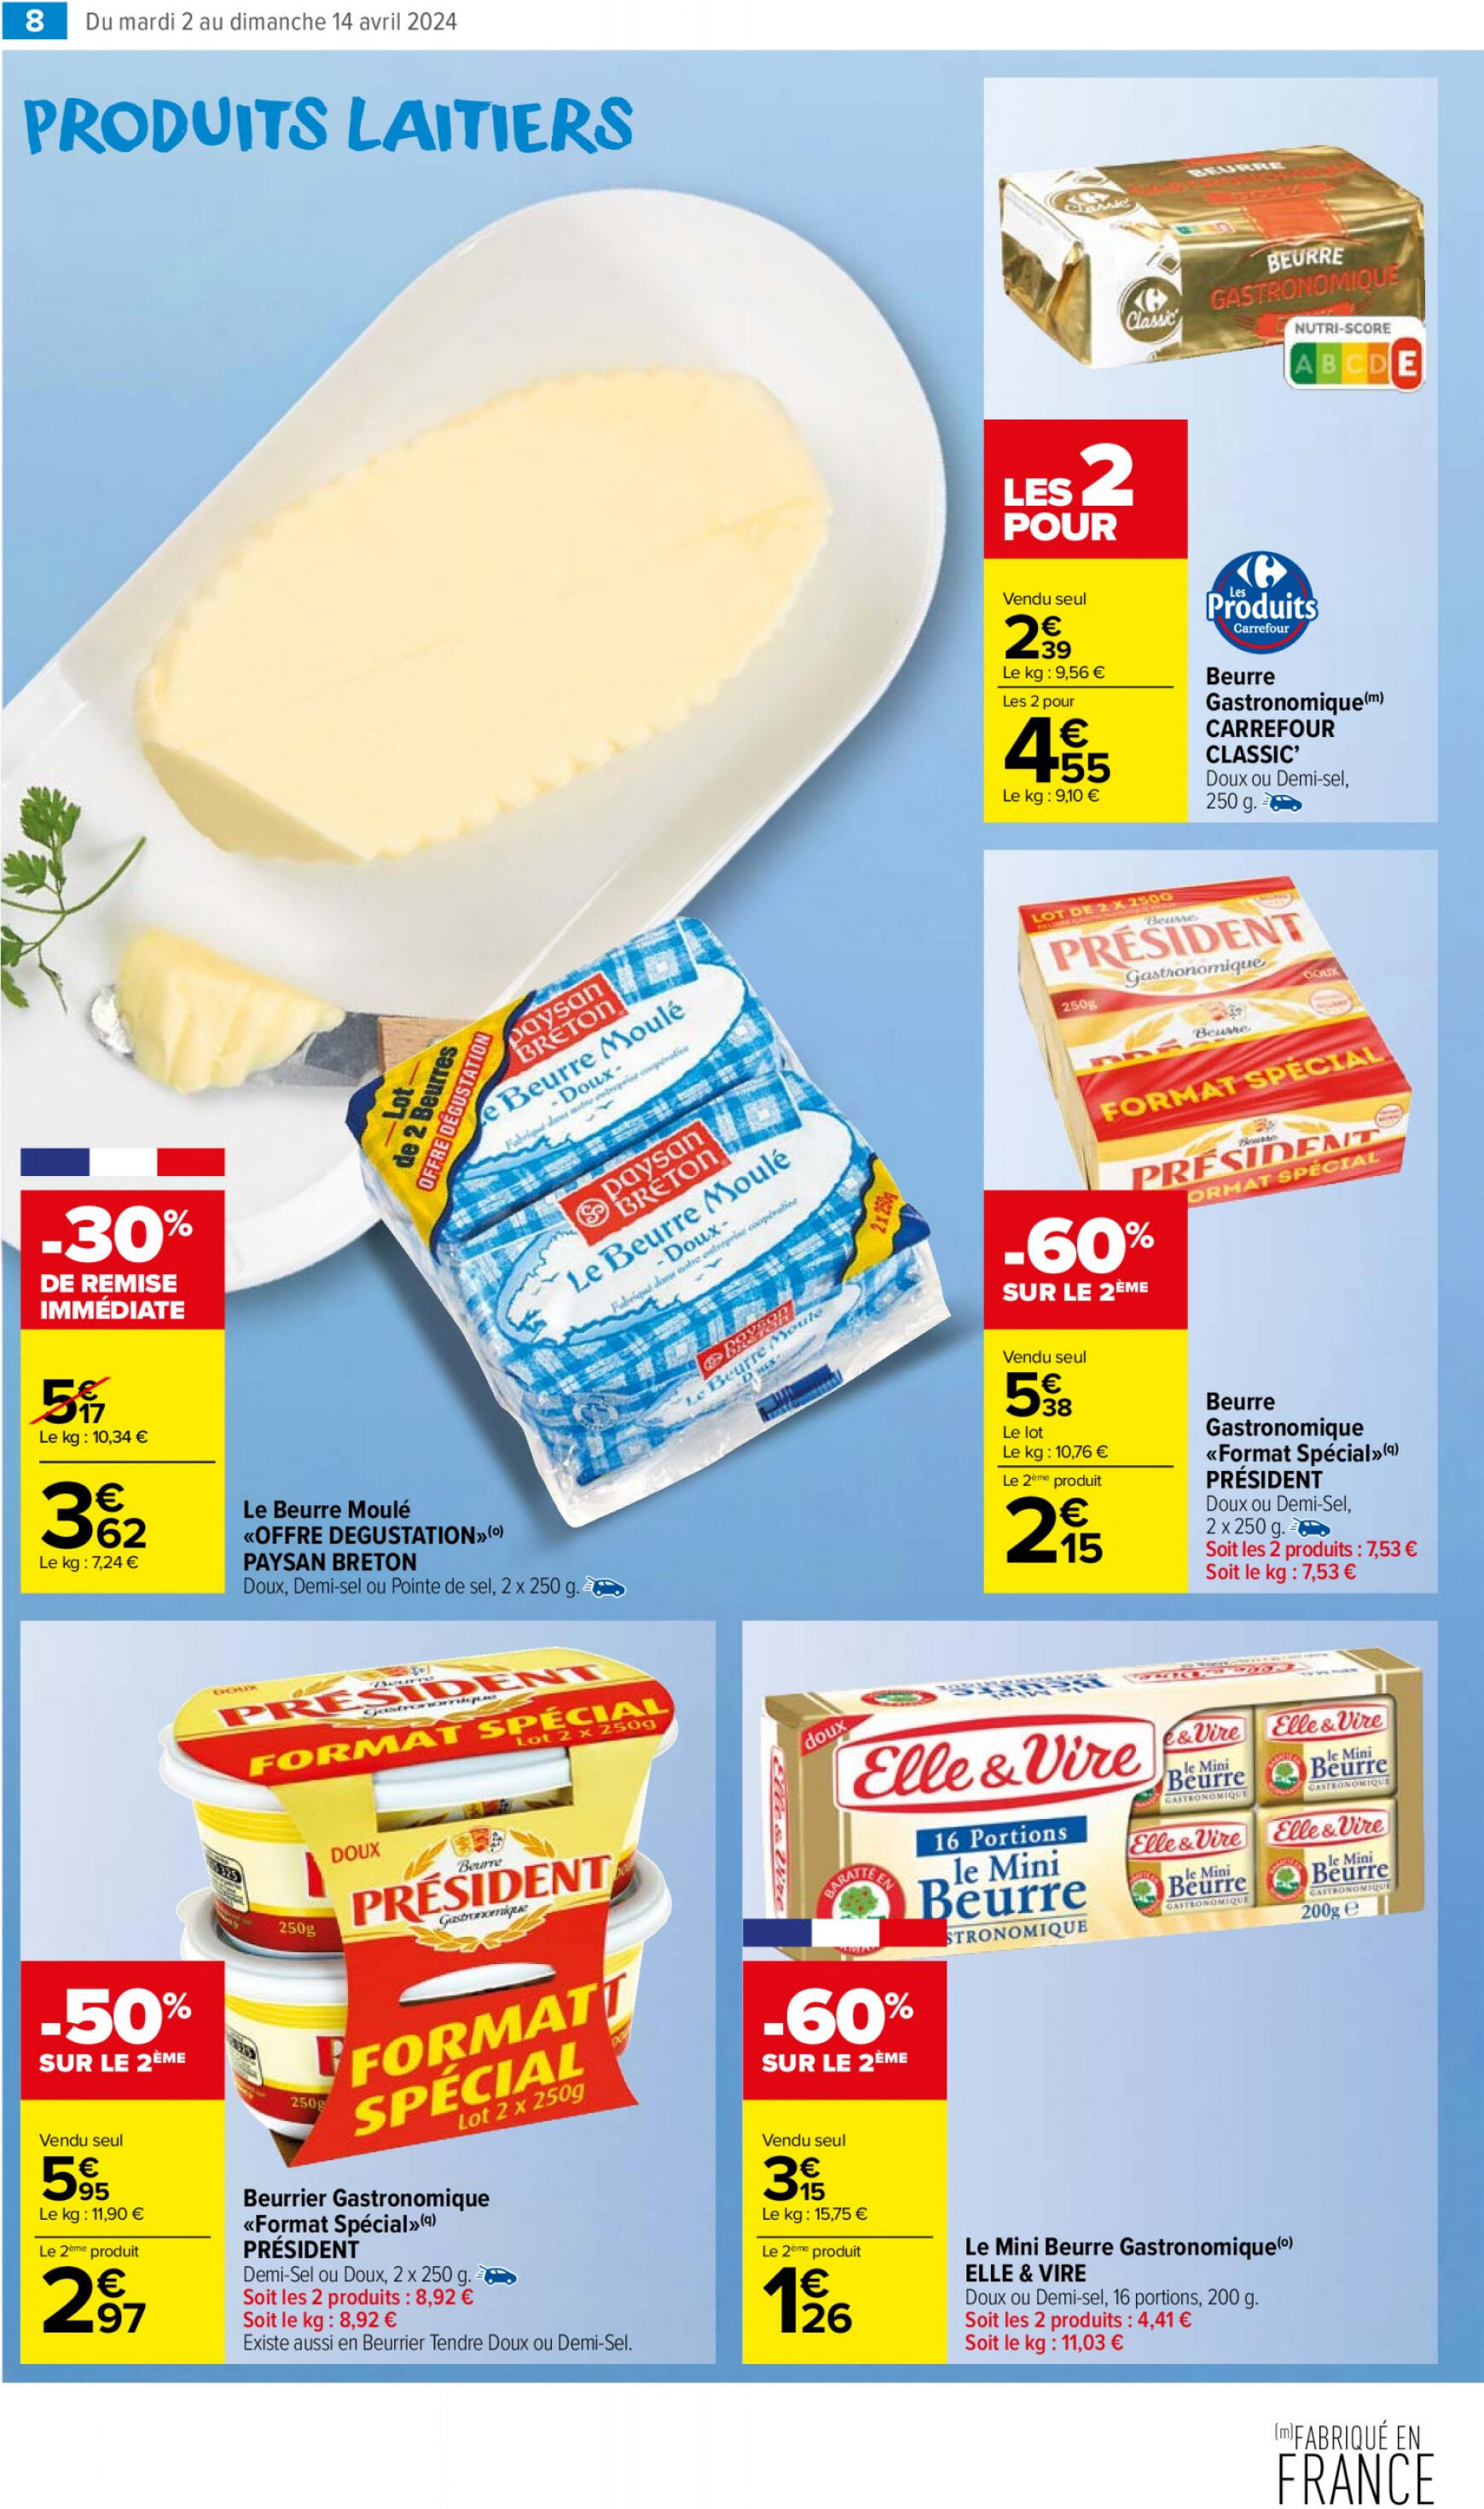 carrefour-market - Carrefour Market - Un MIAM pour les produits laitiers valable à partir de 02.04.2024 - page: 12